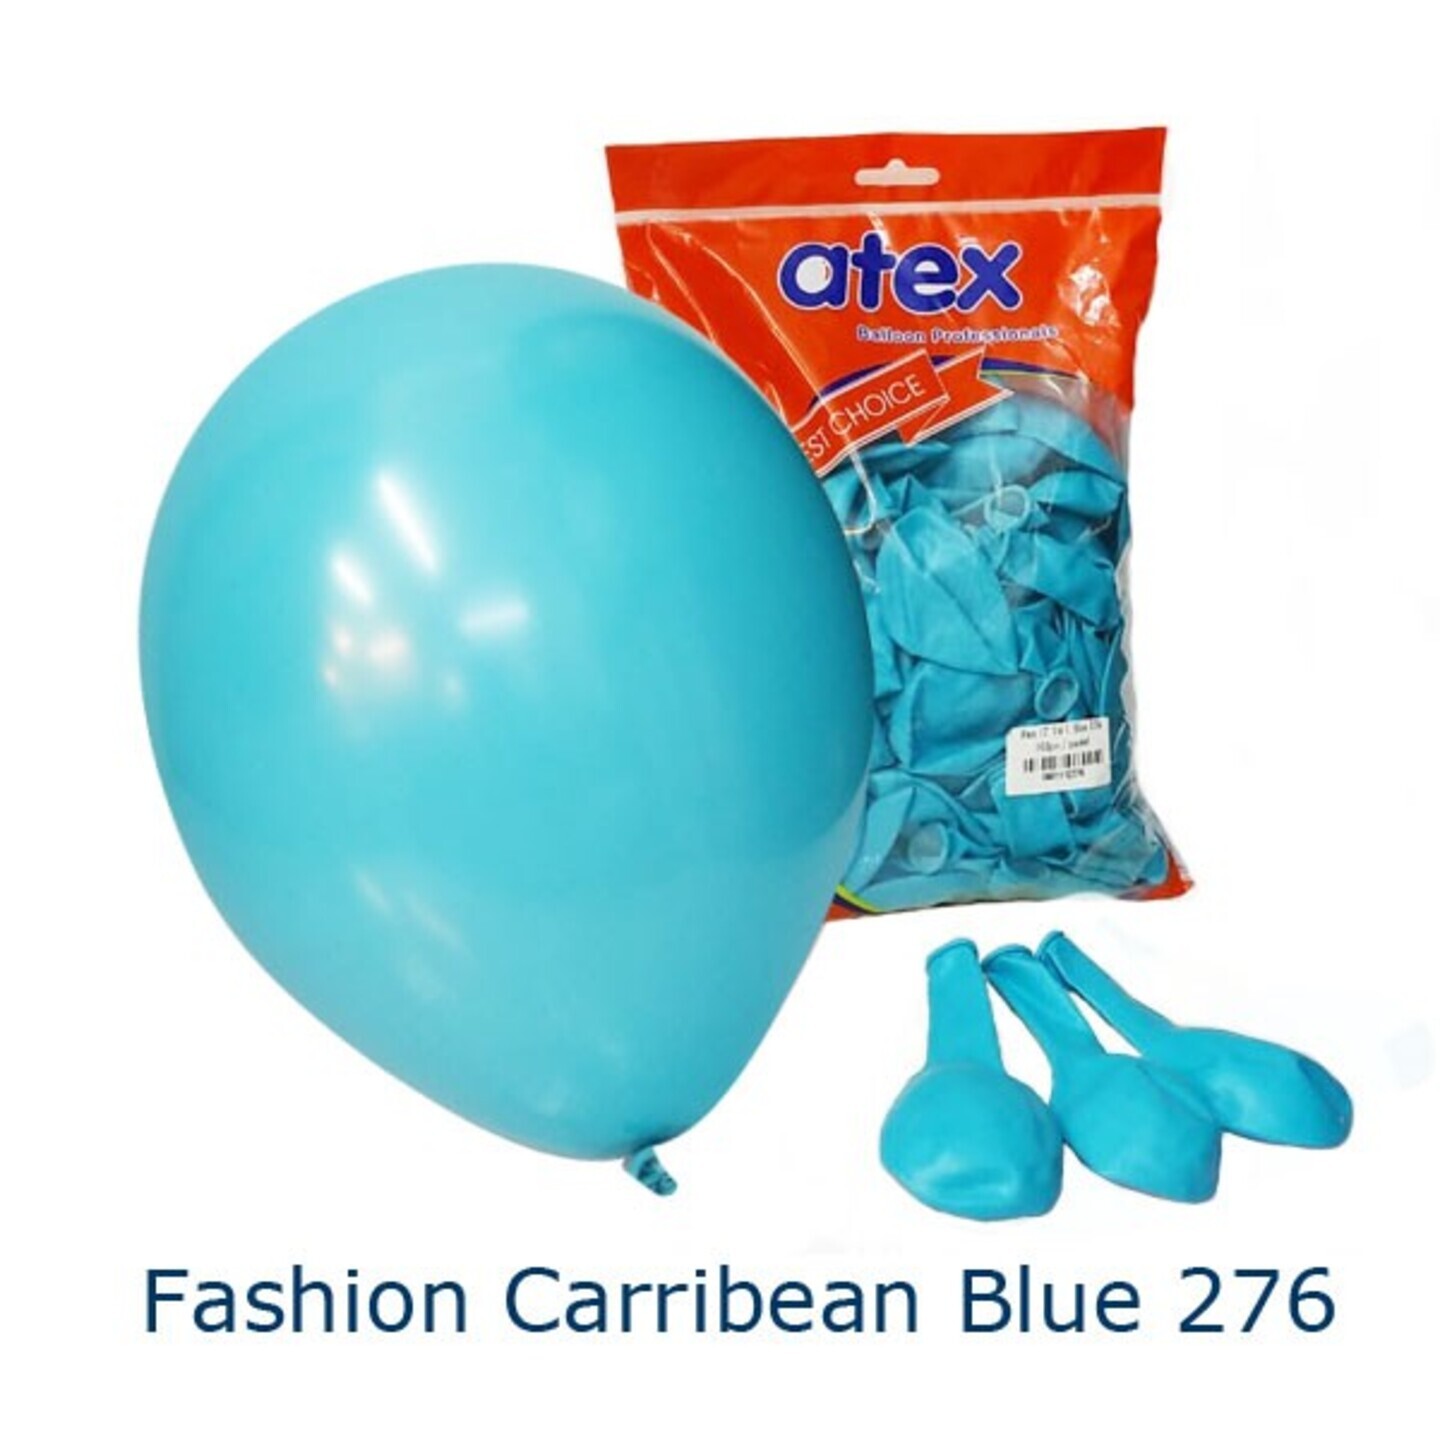 Fashion Caribbean Blue 276